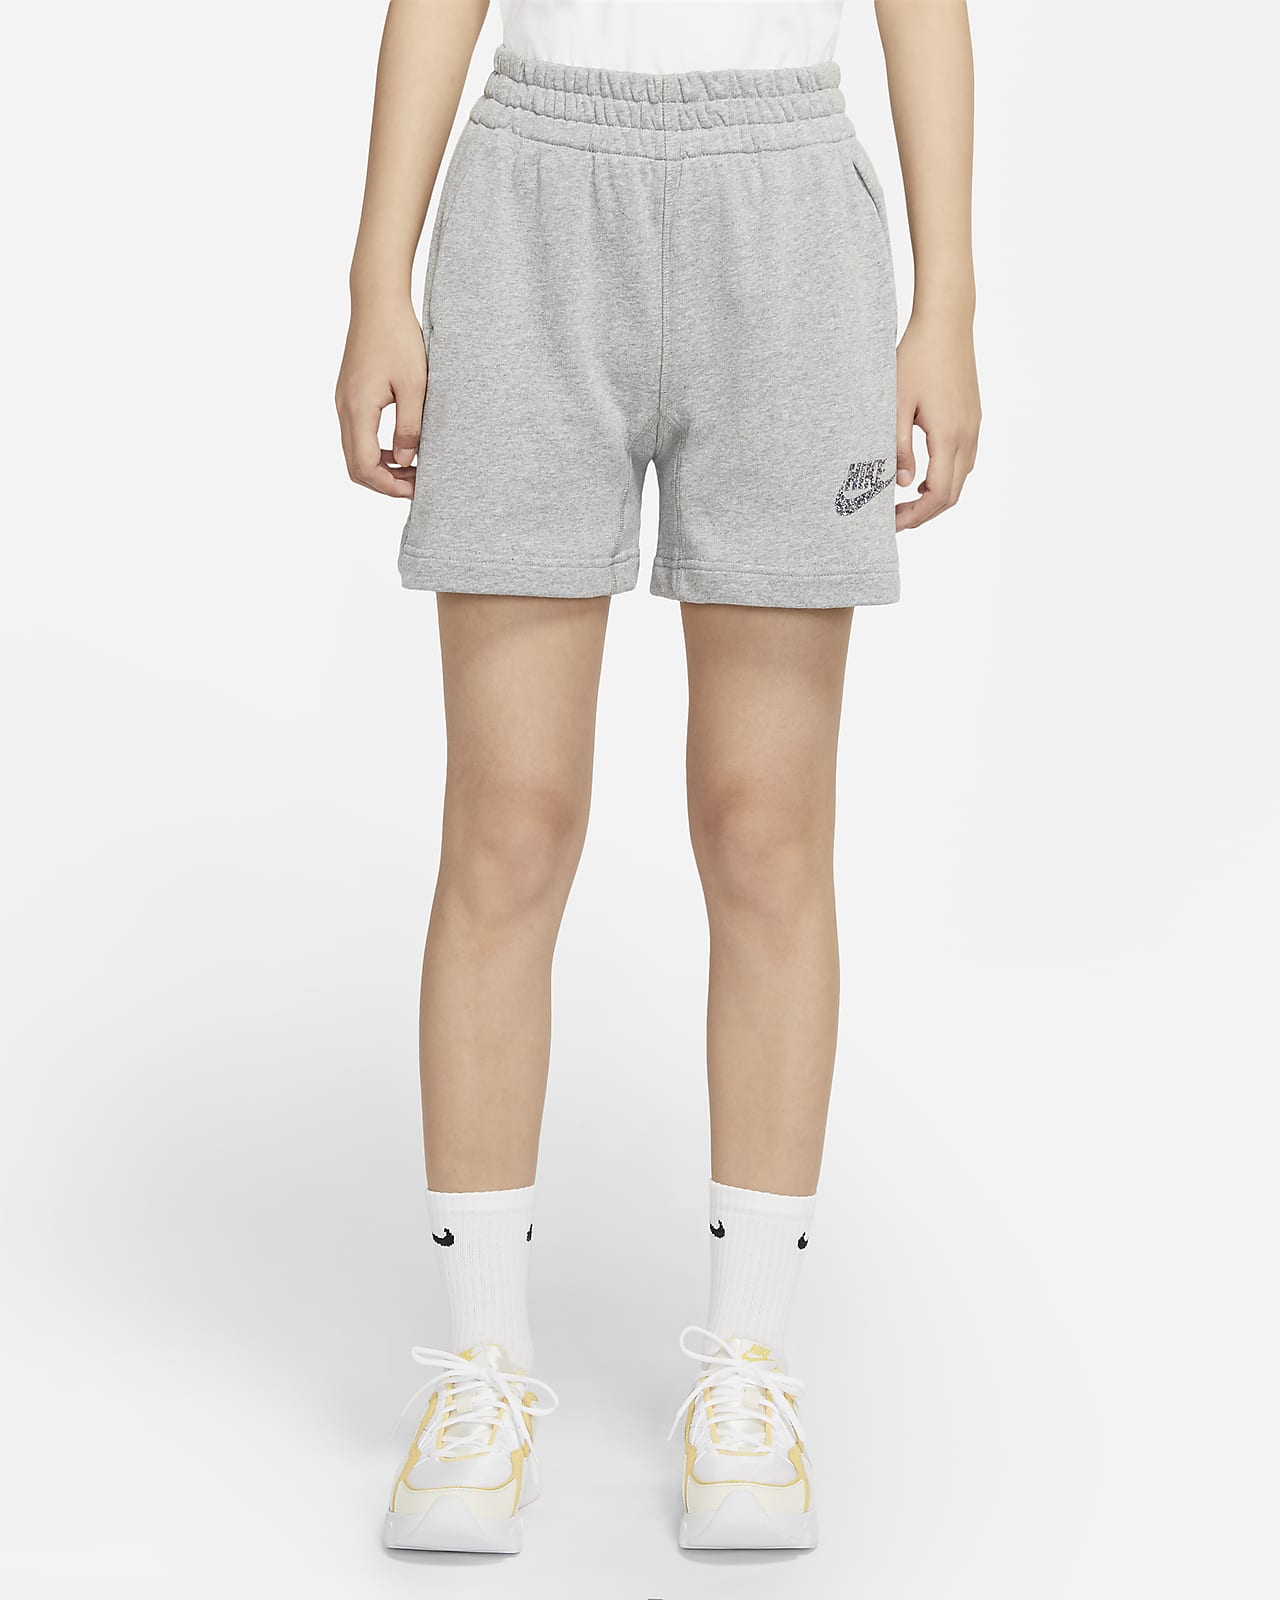 Shorts para mujer Nike Sportswear. Nike.com